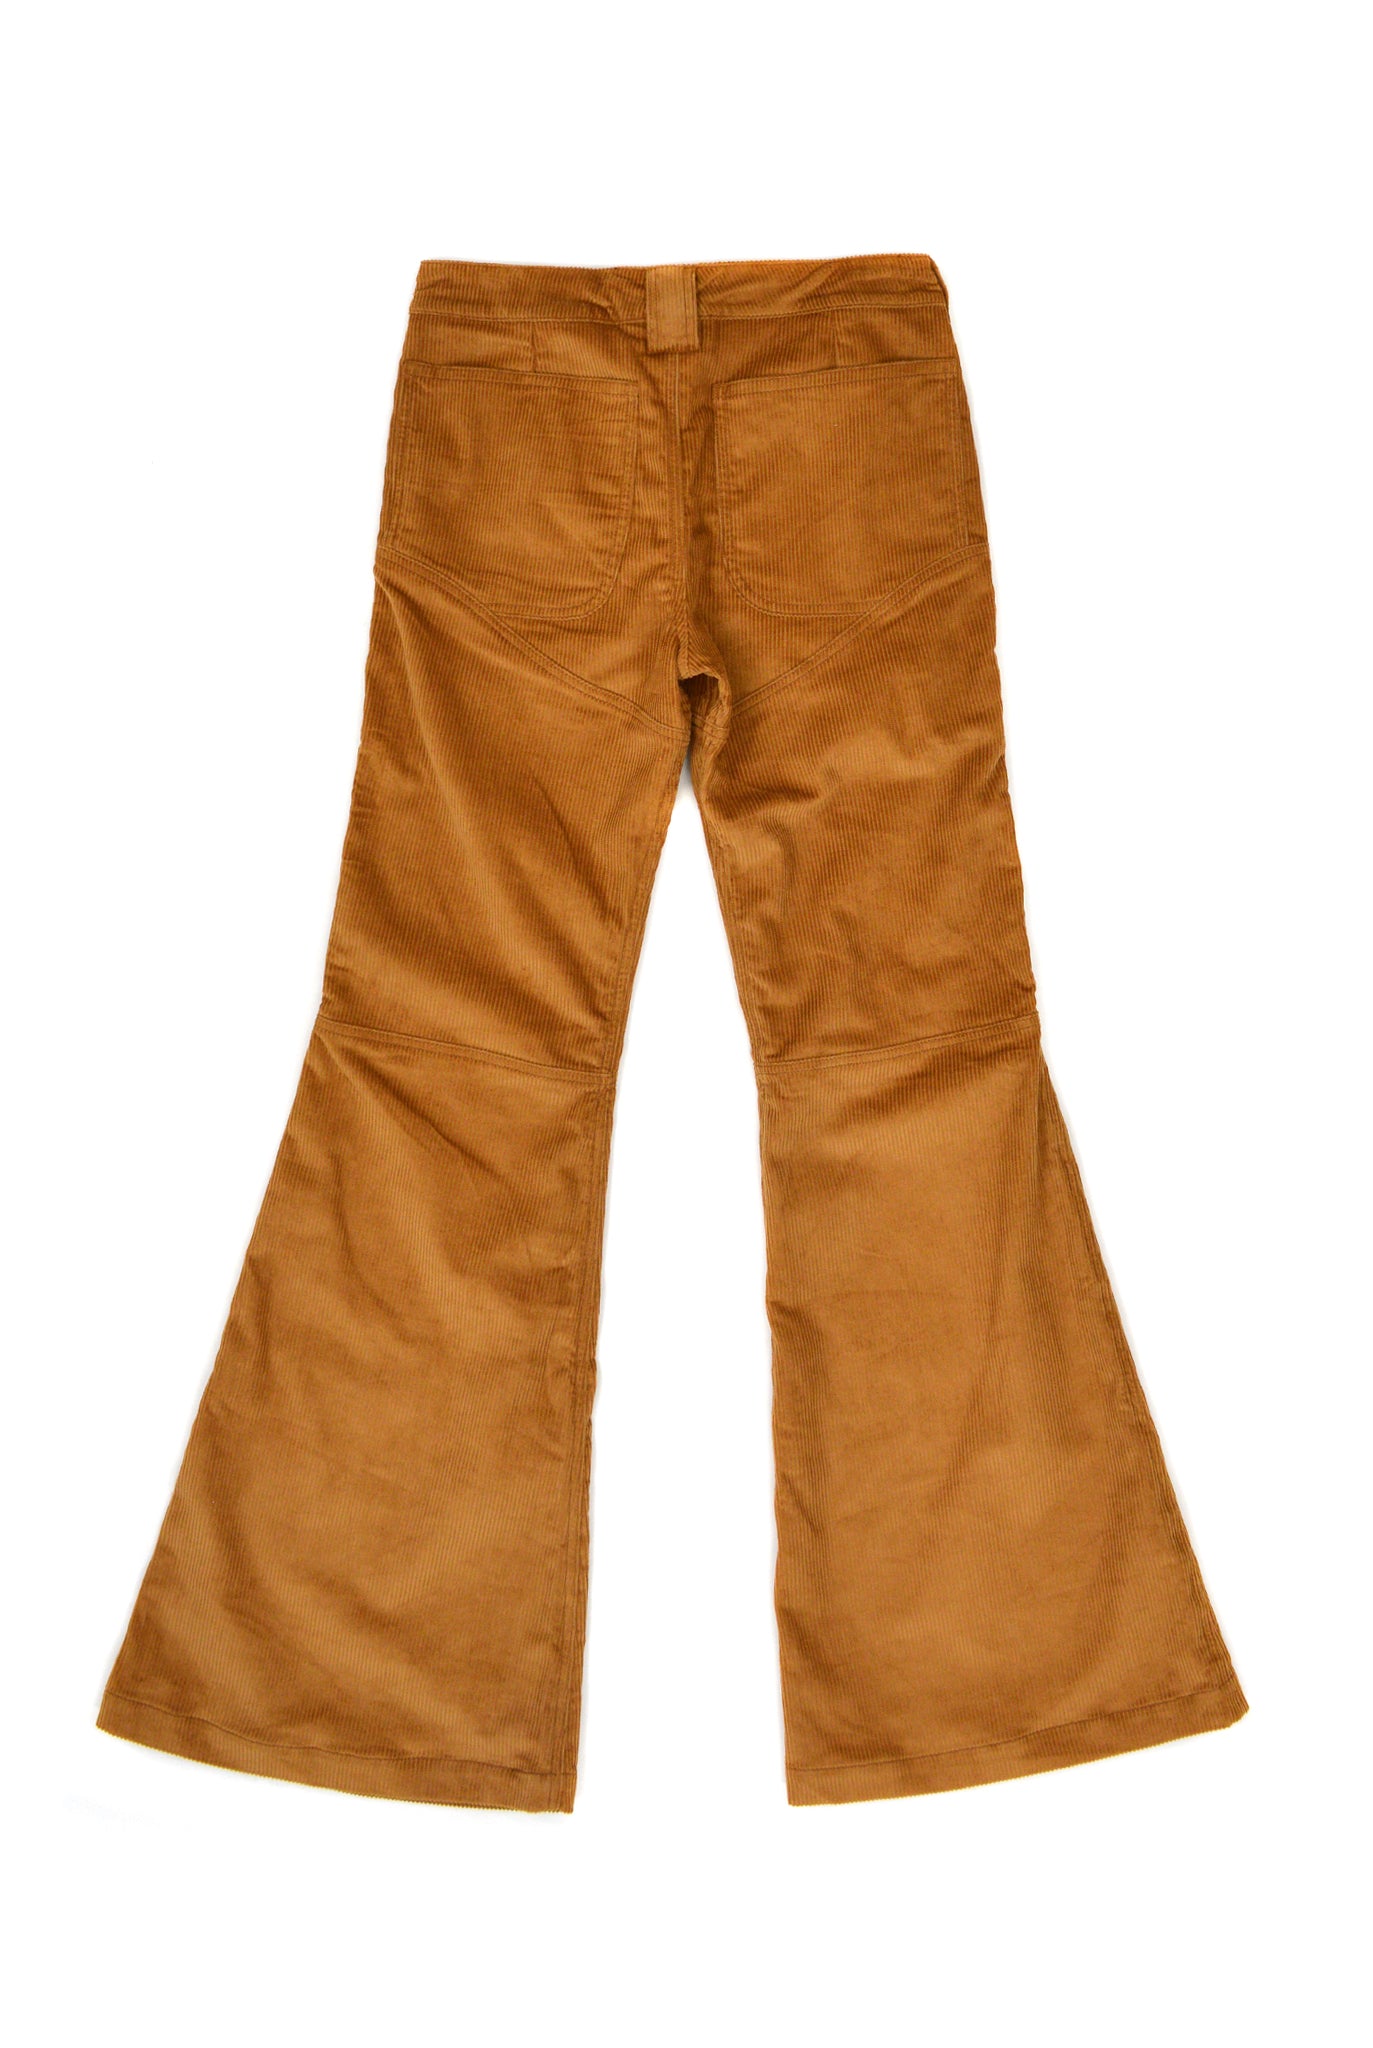 Telfar 3-Panel Boot-Cut Corduroy Pants, Brown